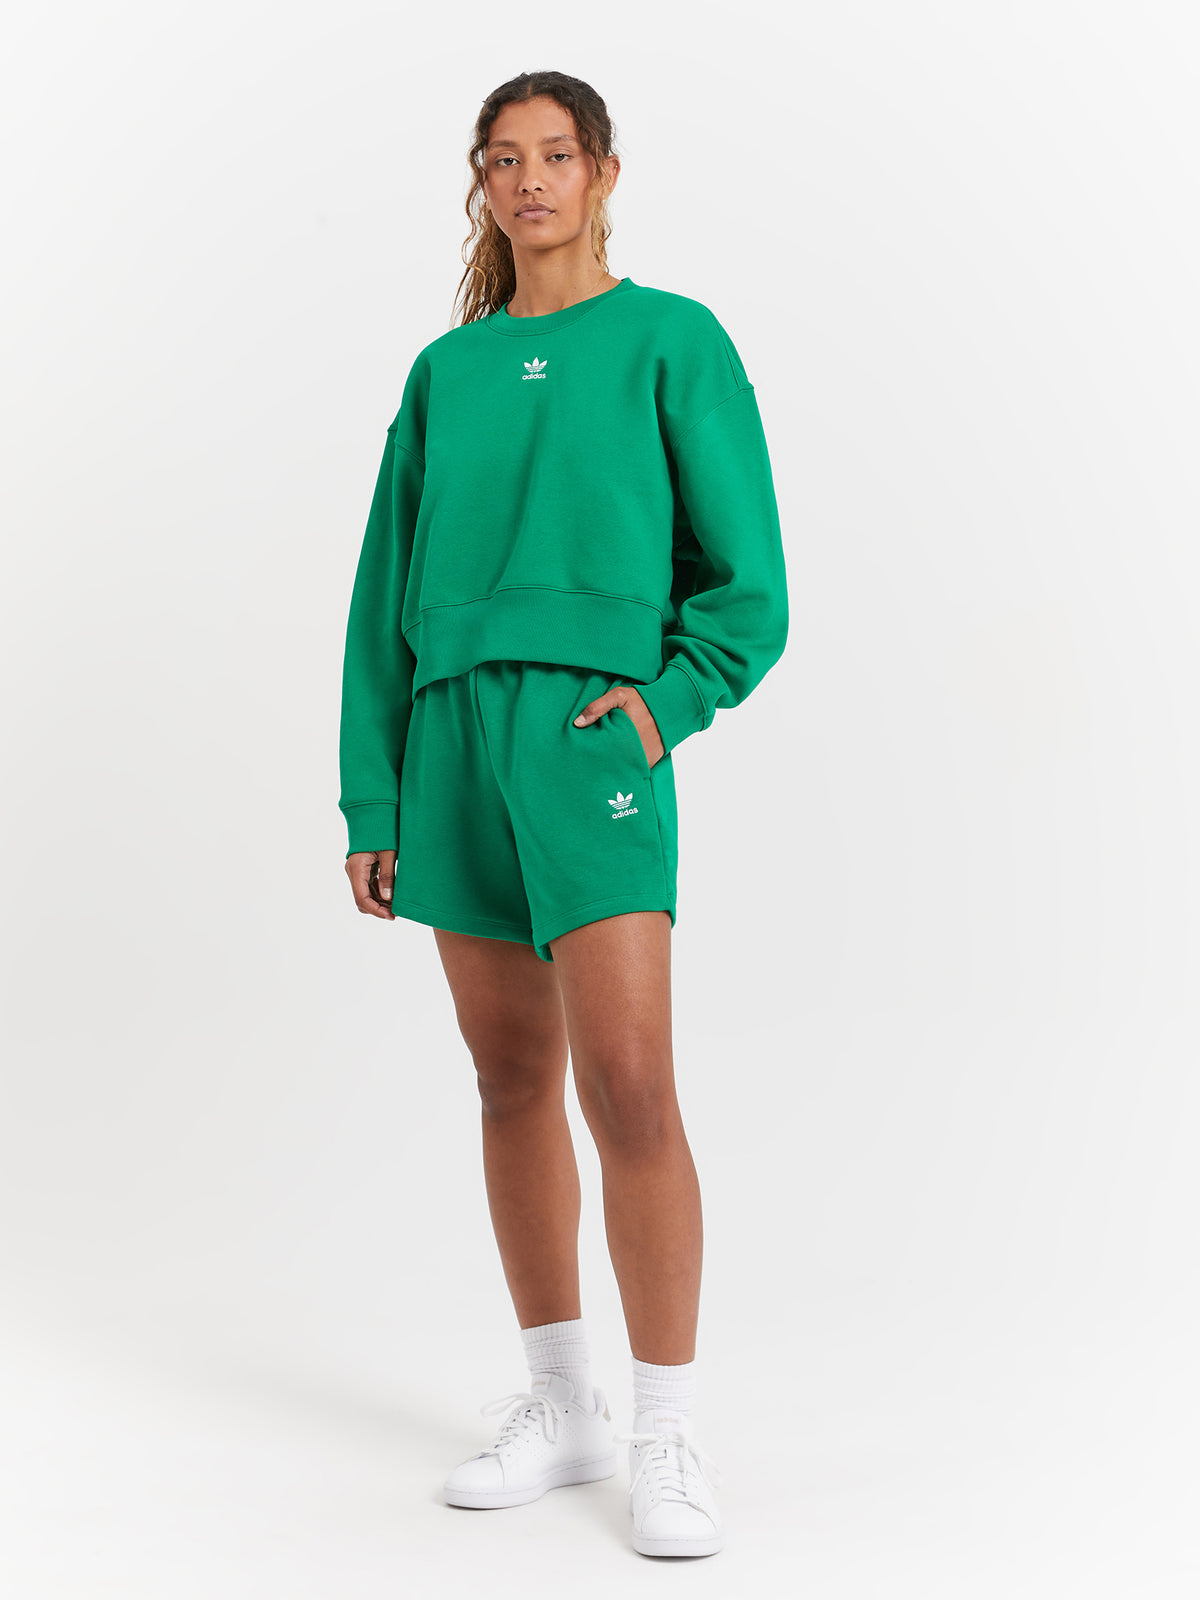 Adicolor Essentials Crew Sweatshirt in Green